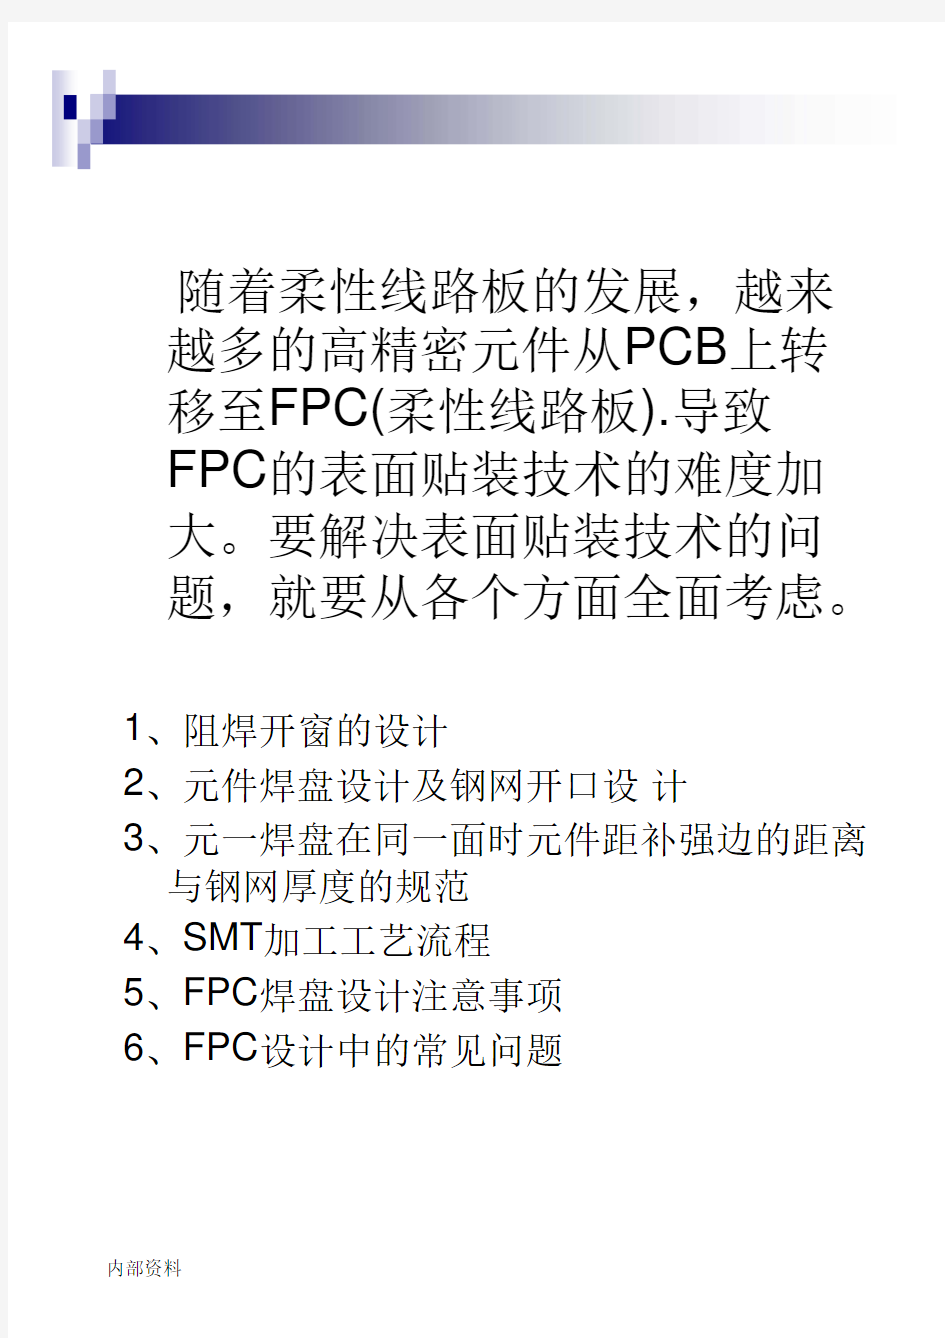 柔性线路板(FPC)SMT组装应用规范